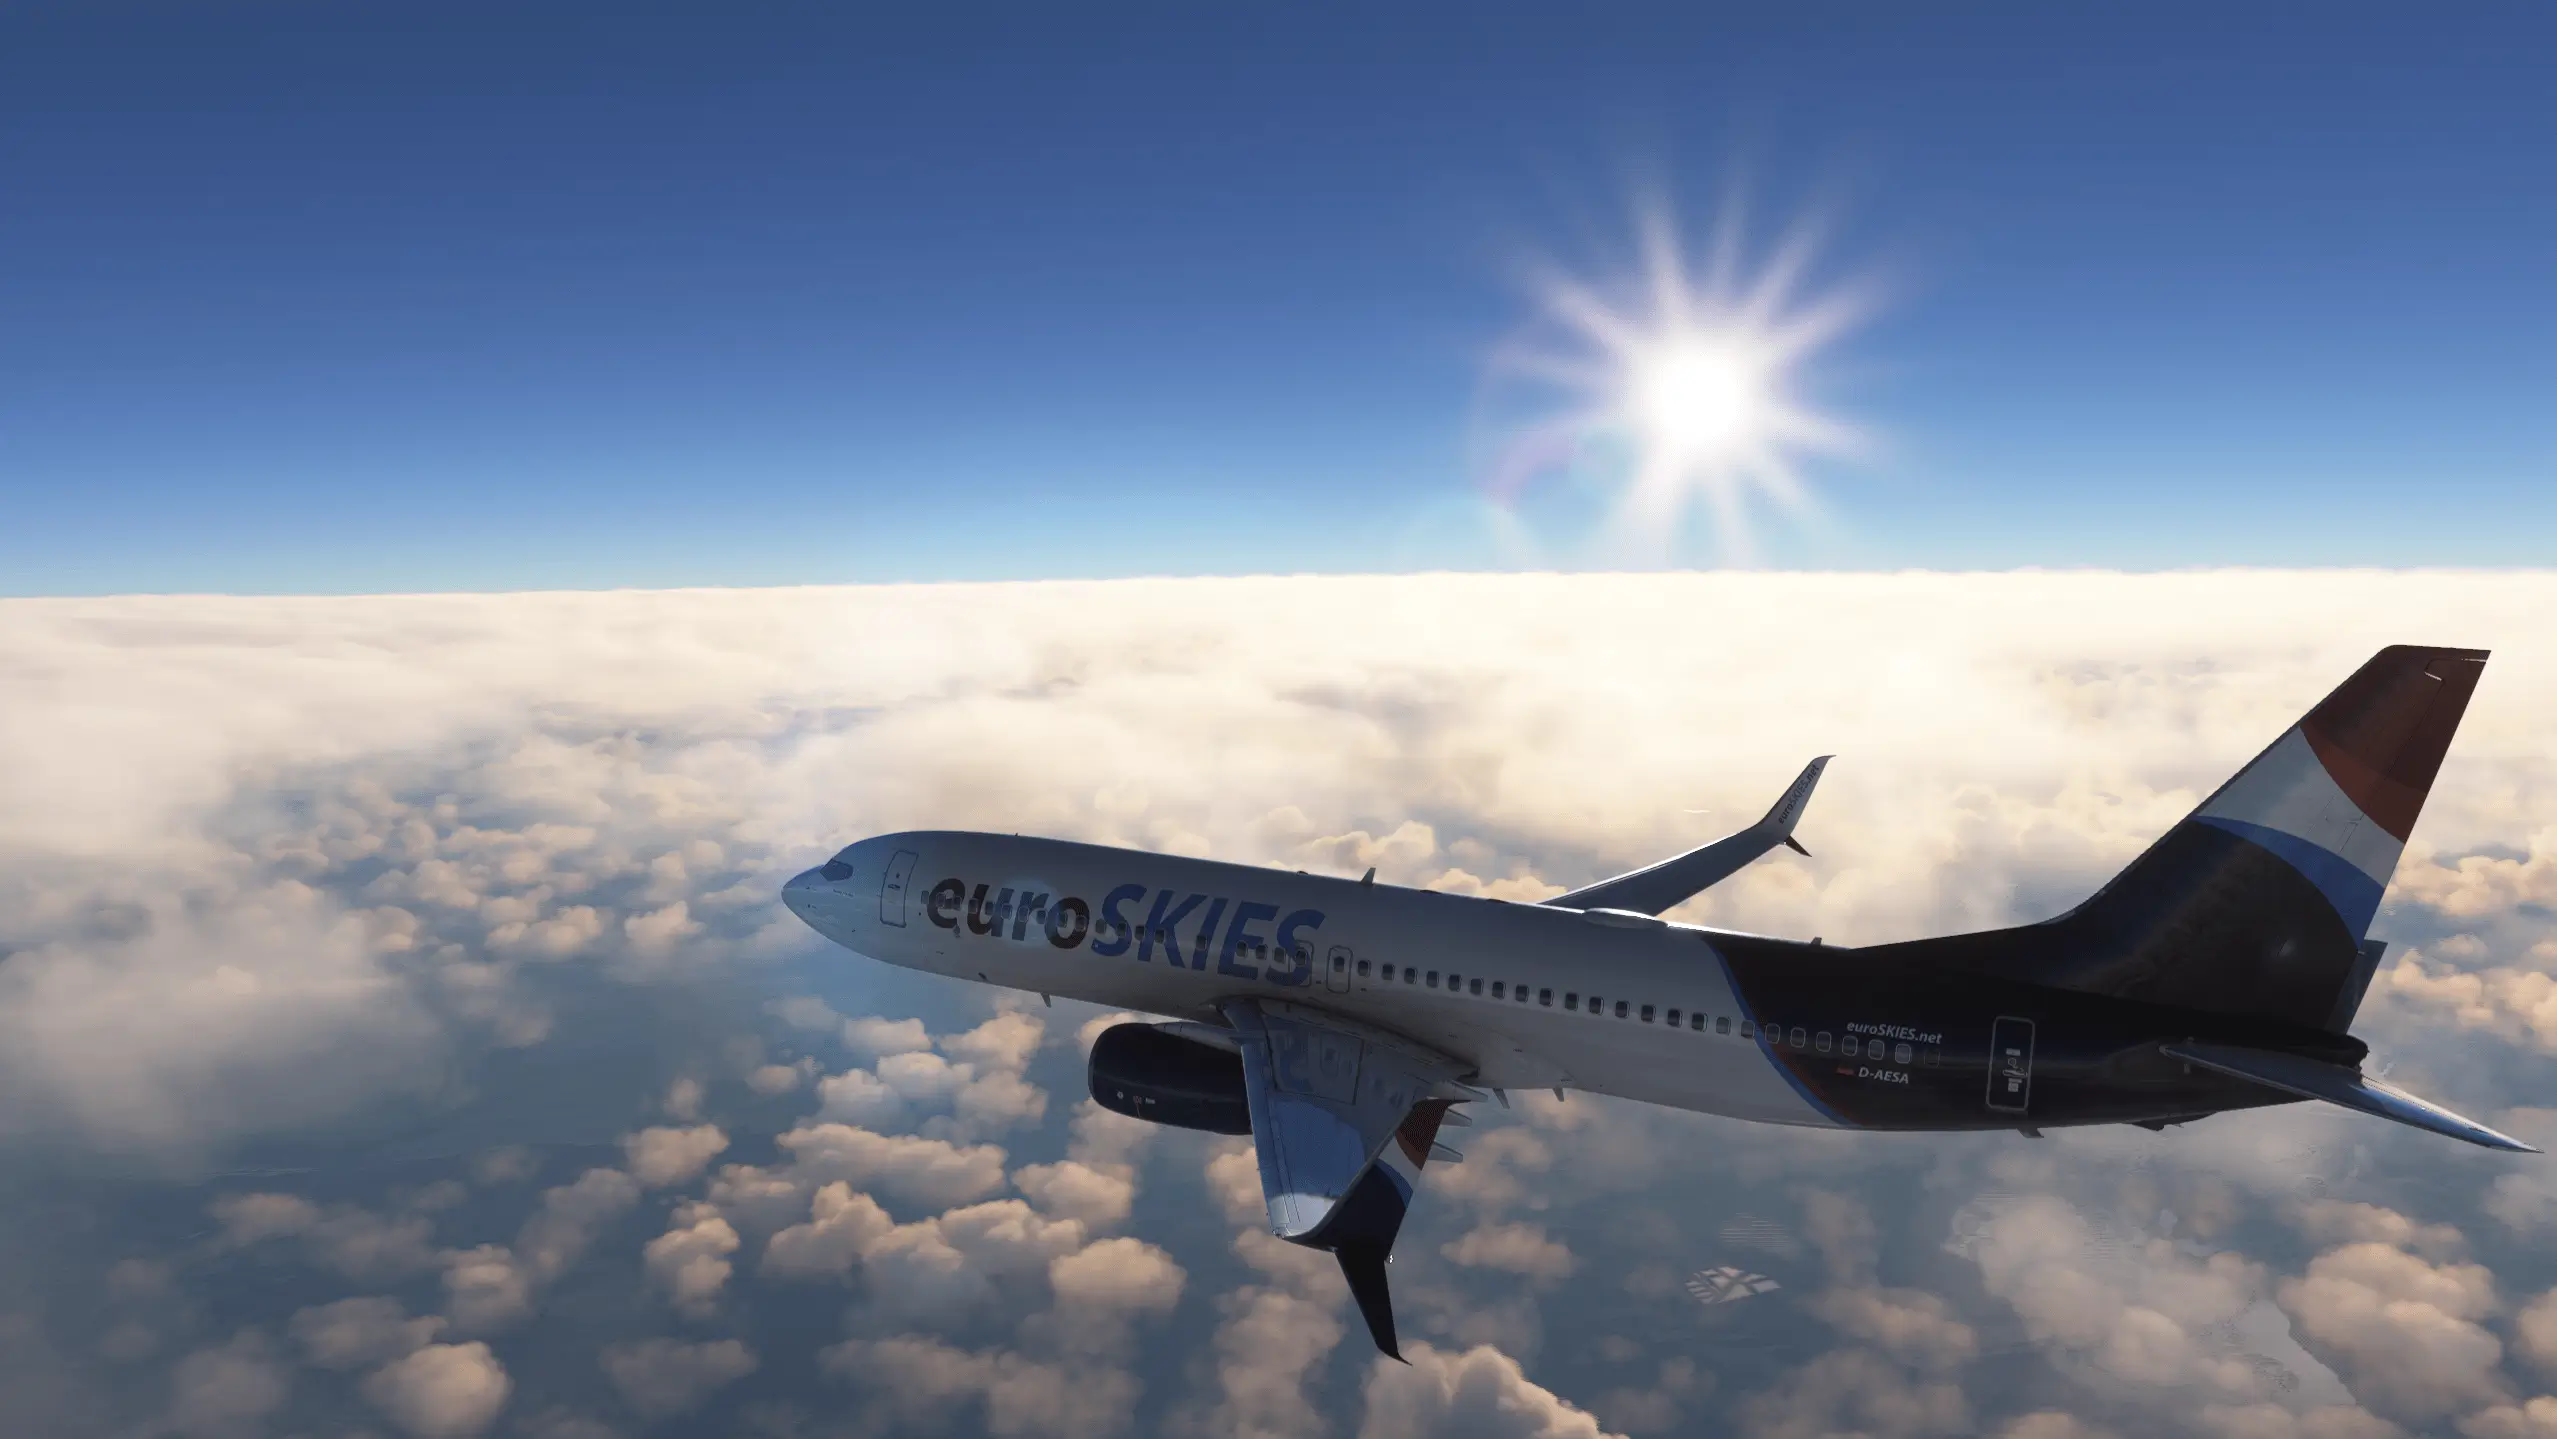 Ein Mitglied der virtuellen Fluggesellschaft euroSKIES fliegt eine PMDG 737-800 über den Wolken mit der Sonne im Hintergrund.